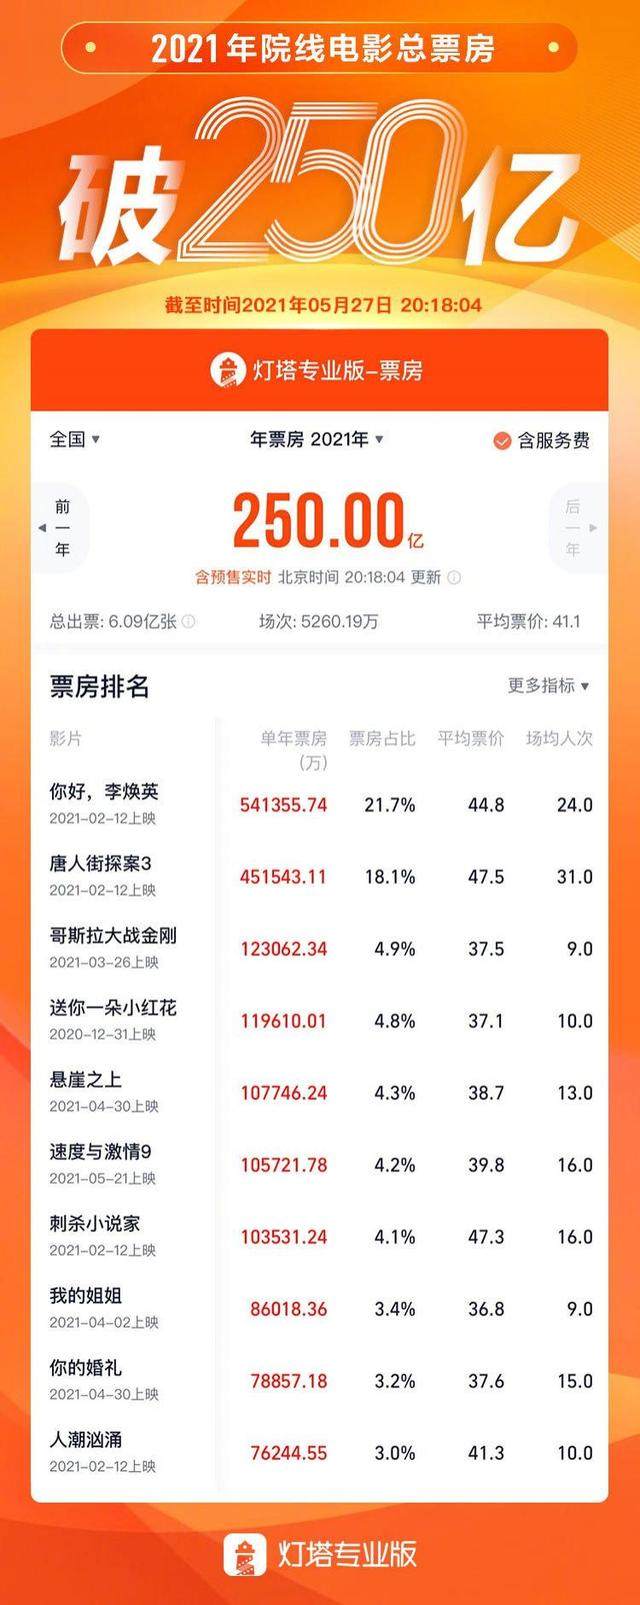 中国电影市场2021年度总票房(含预售)突破250亿元